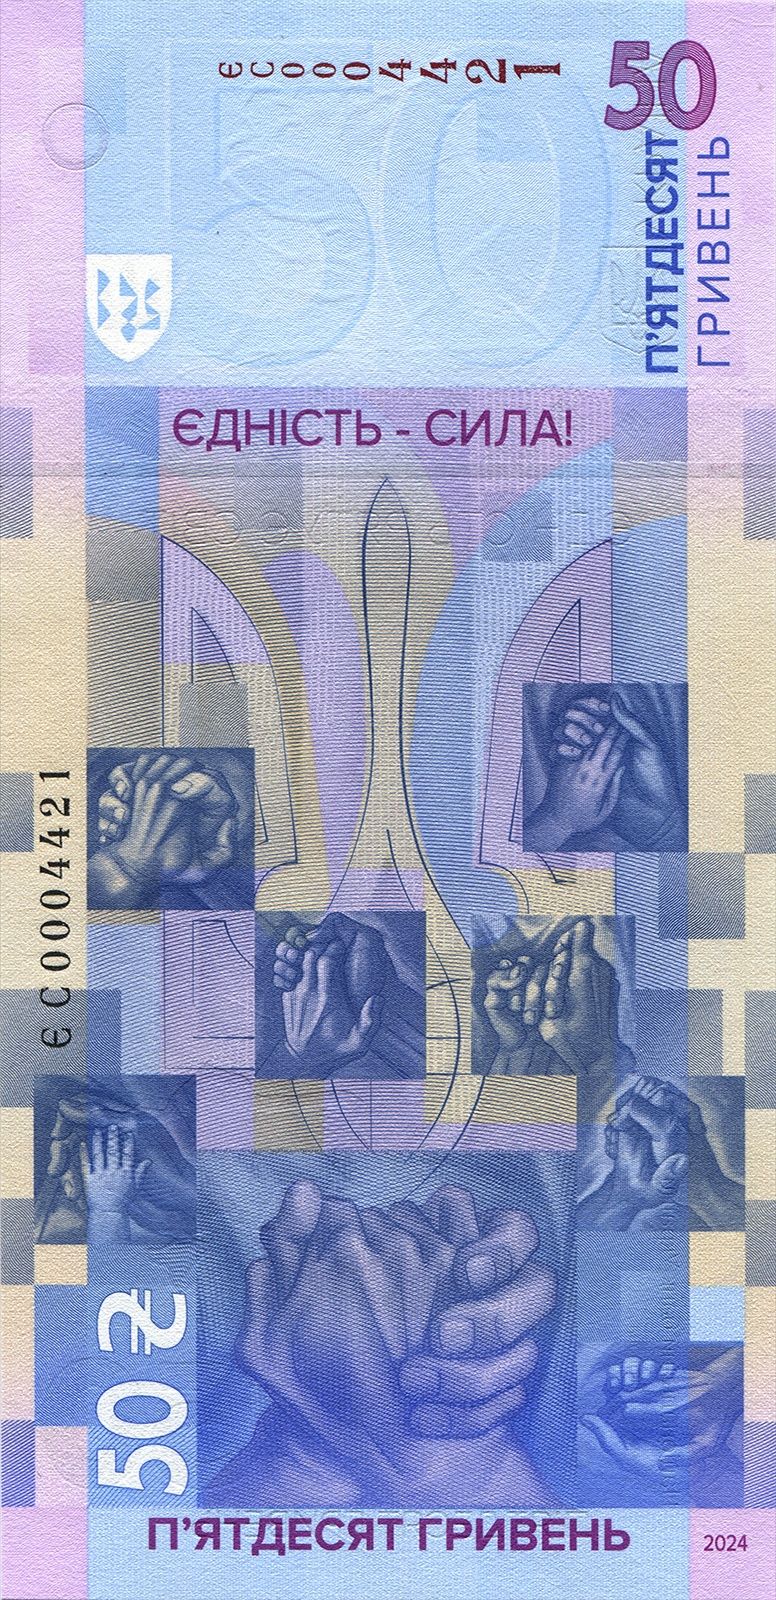 Пам'ятна банкнота Єдність 50 грн